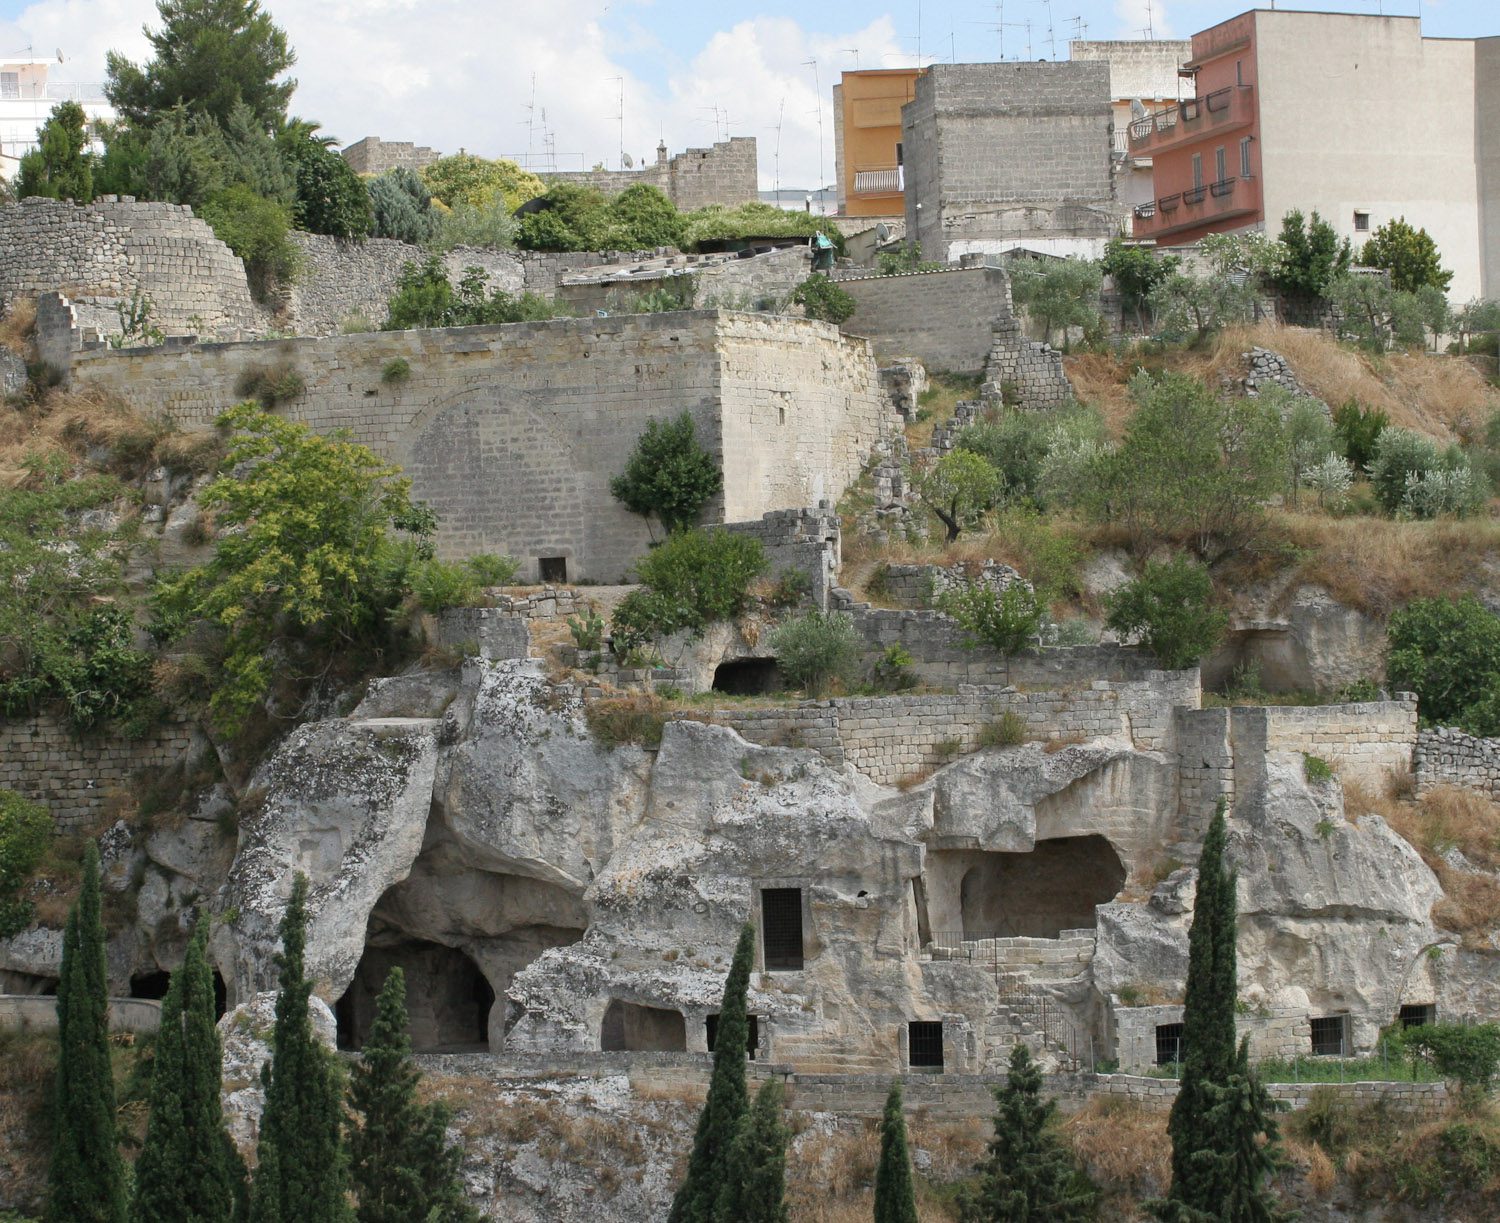 Cave towns in Puglia